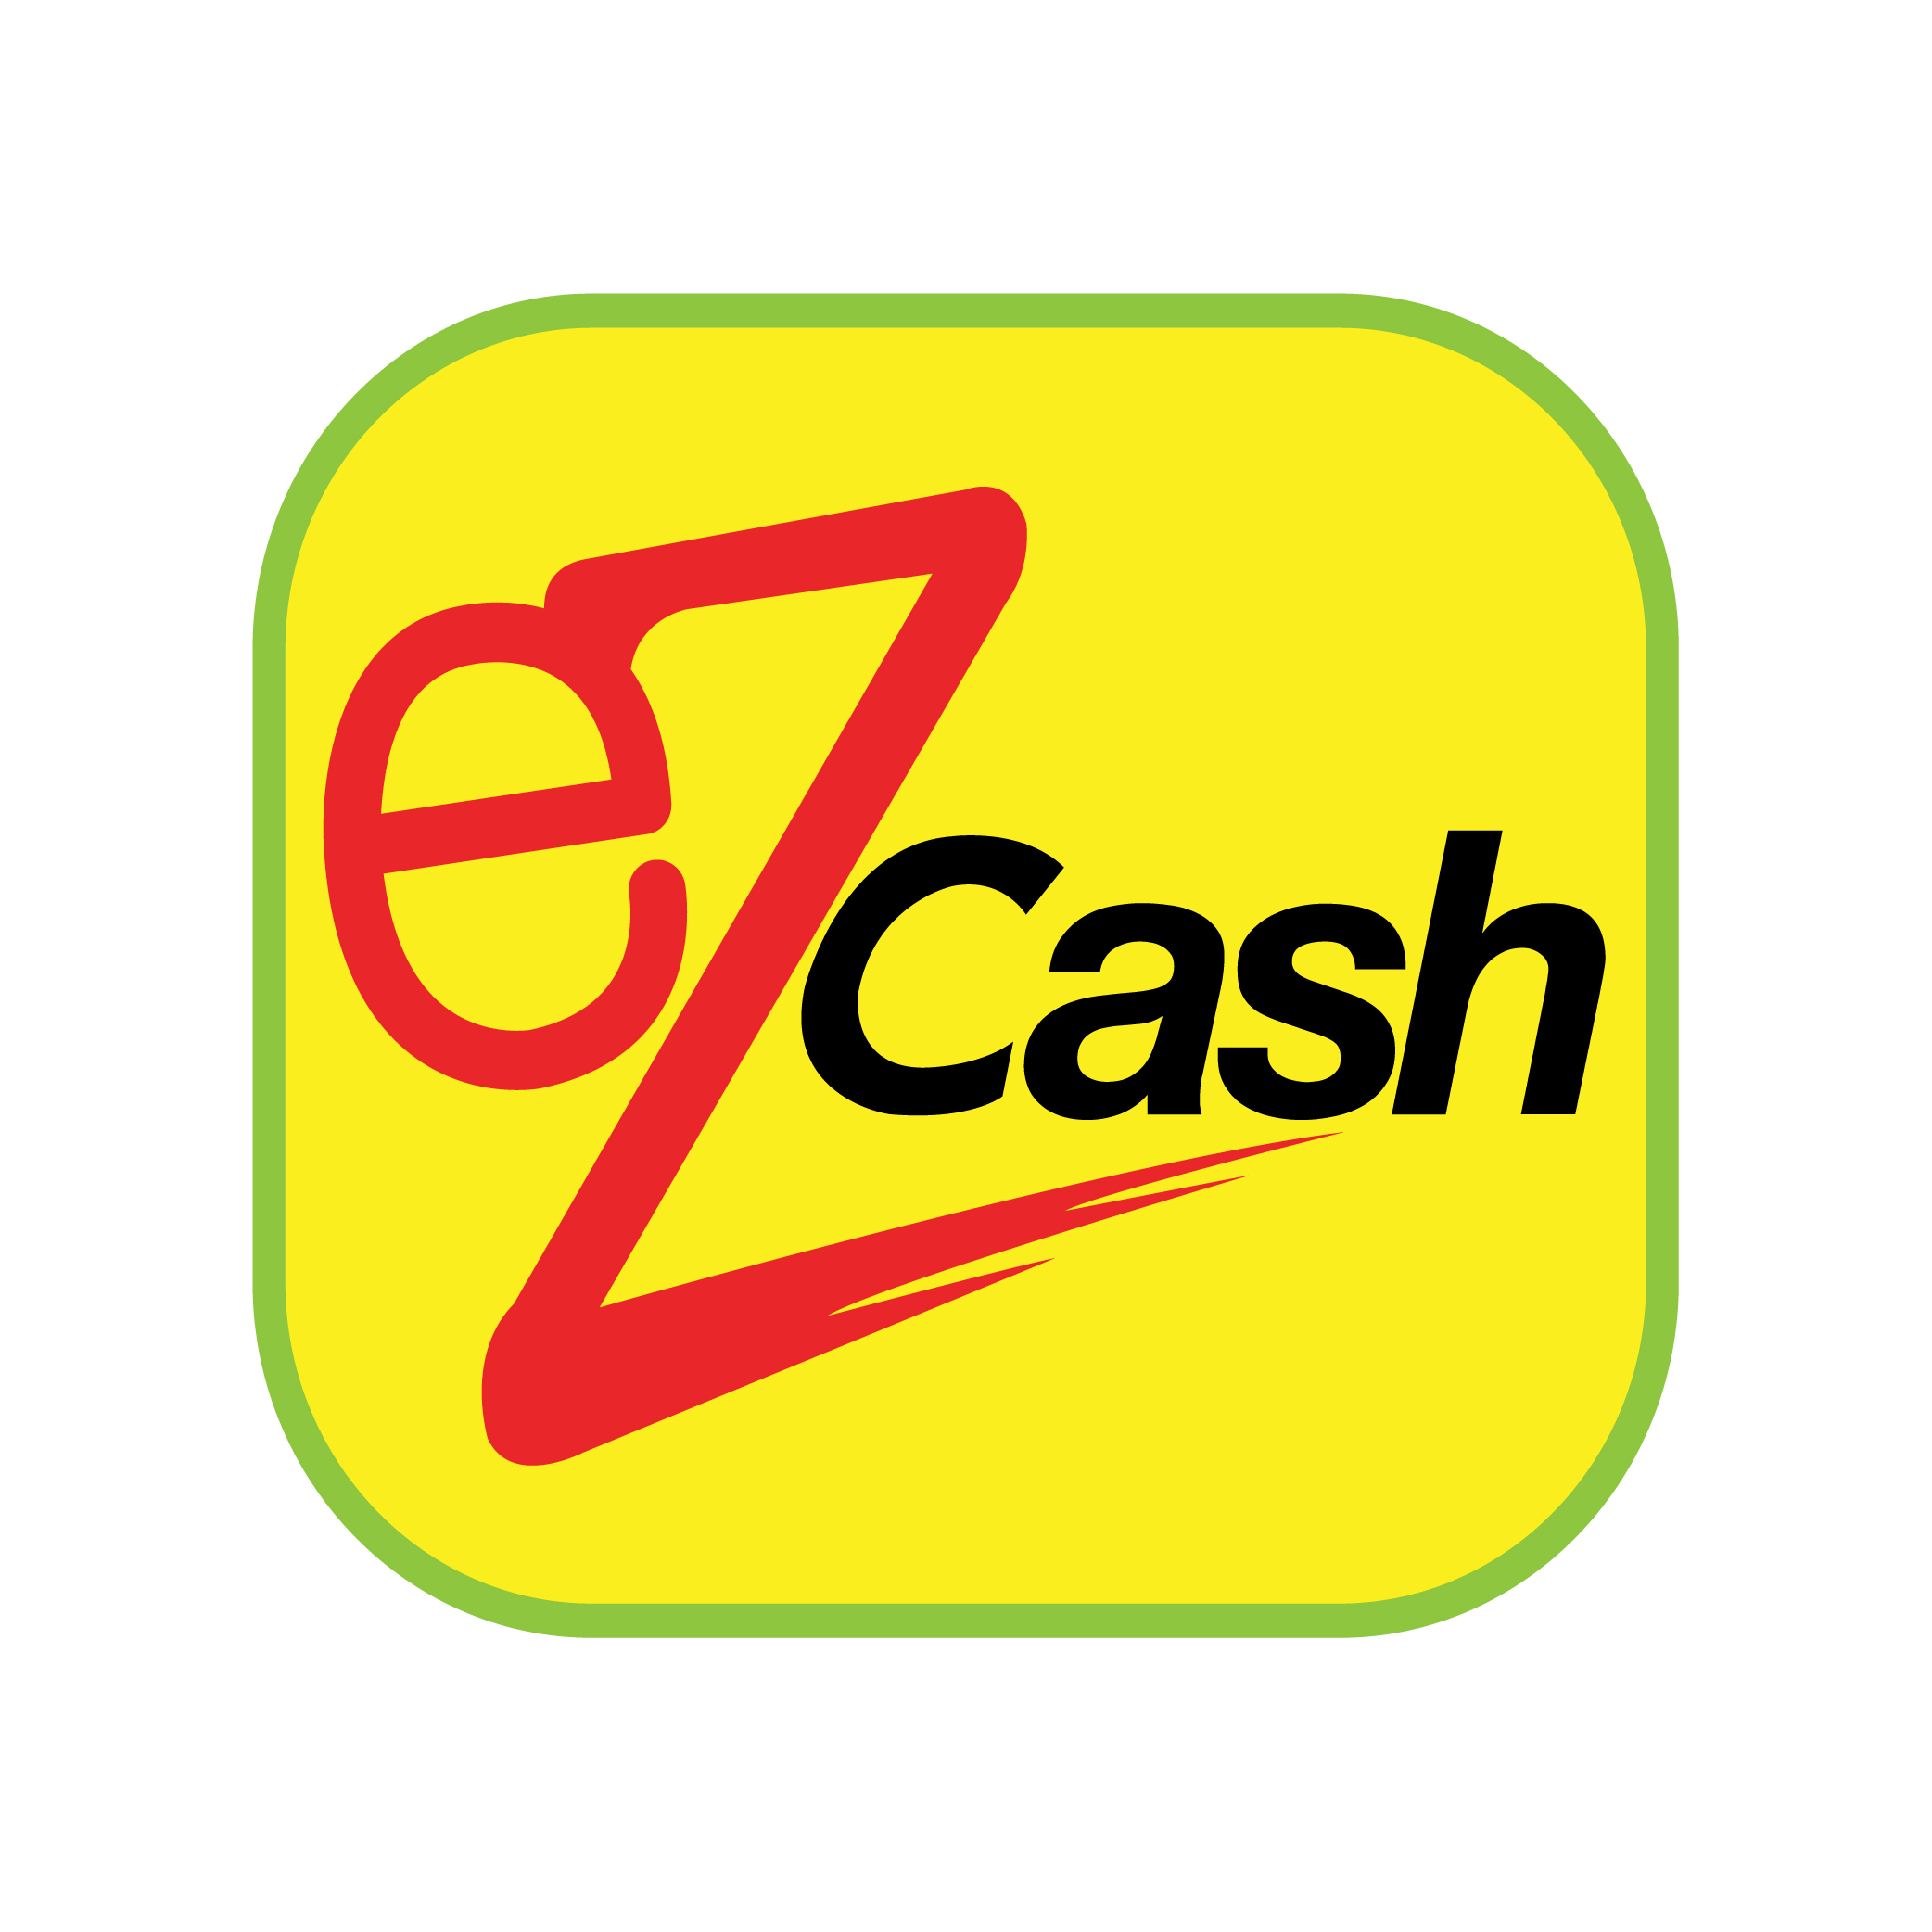 Ez cash 32. Ez logo. Город кэш лого. Обои EZCASH.